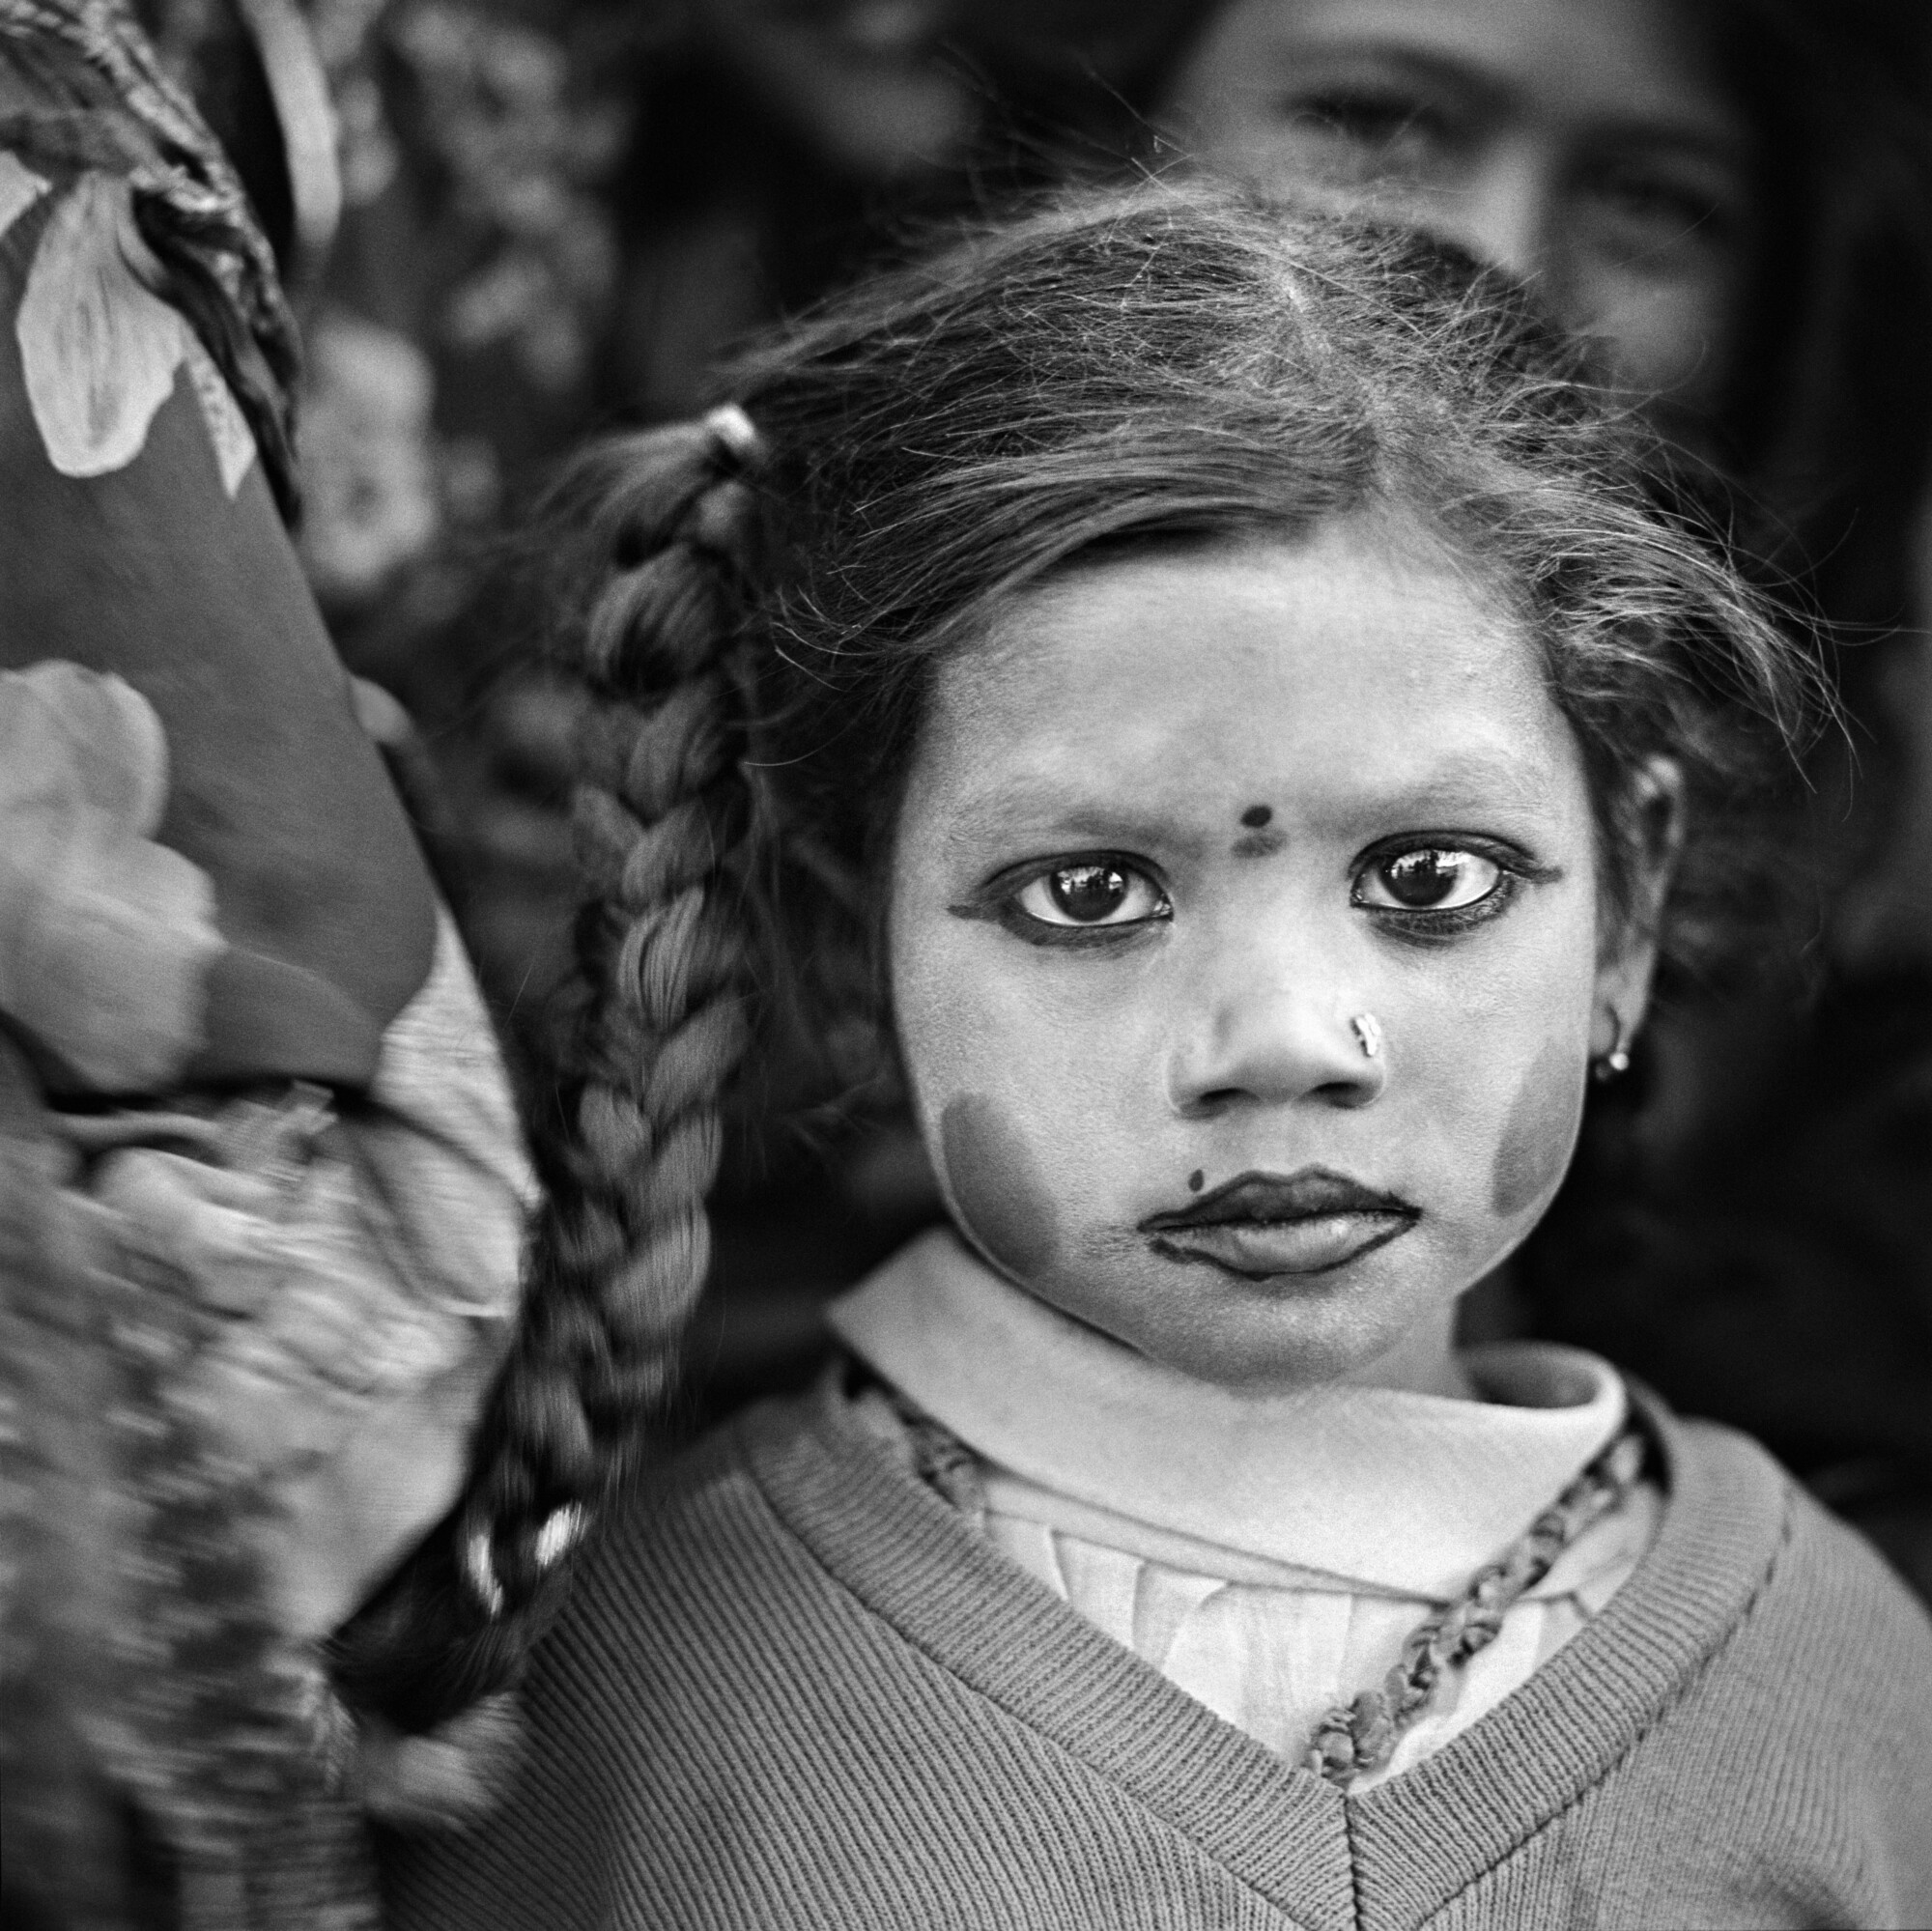 ©Christine Turnauer, Sukh bai, Pushkar, Inde, 2015, Courtesy KLV Art